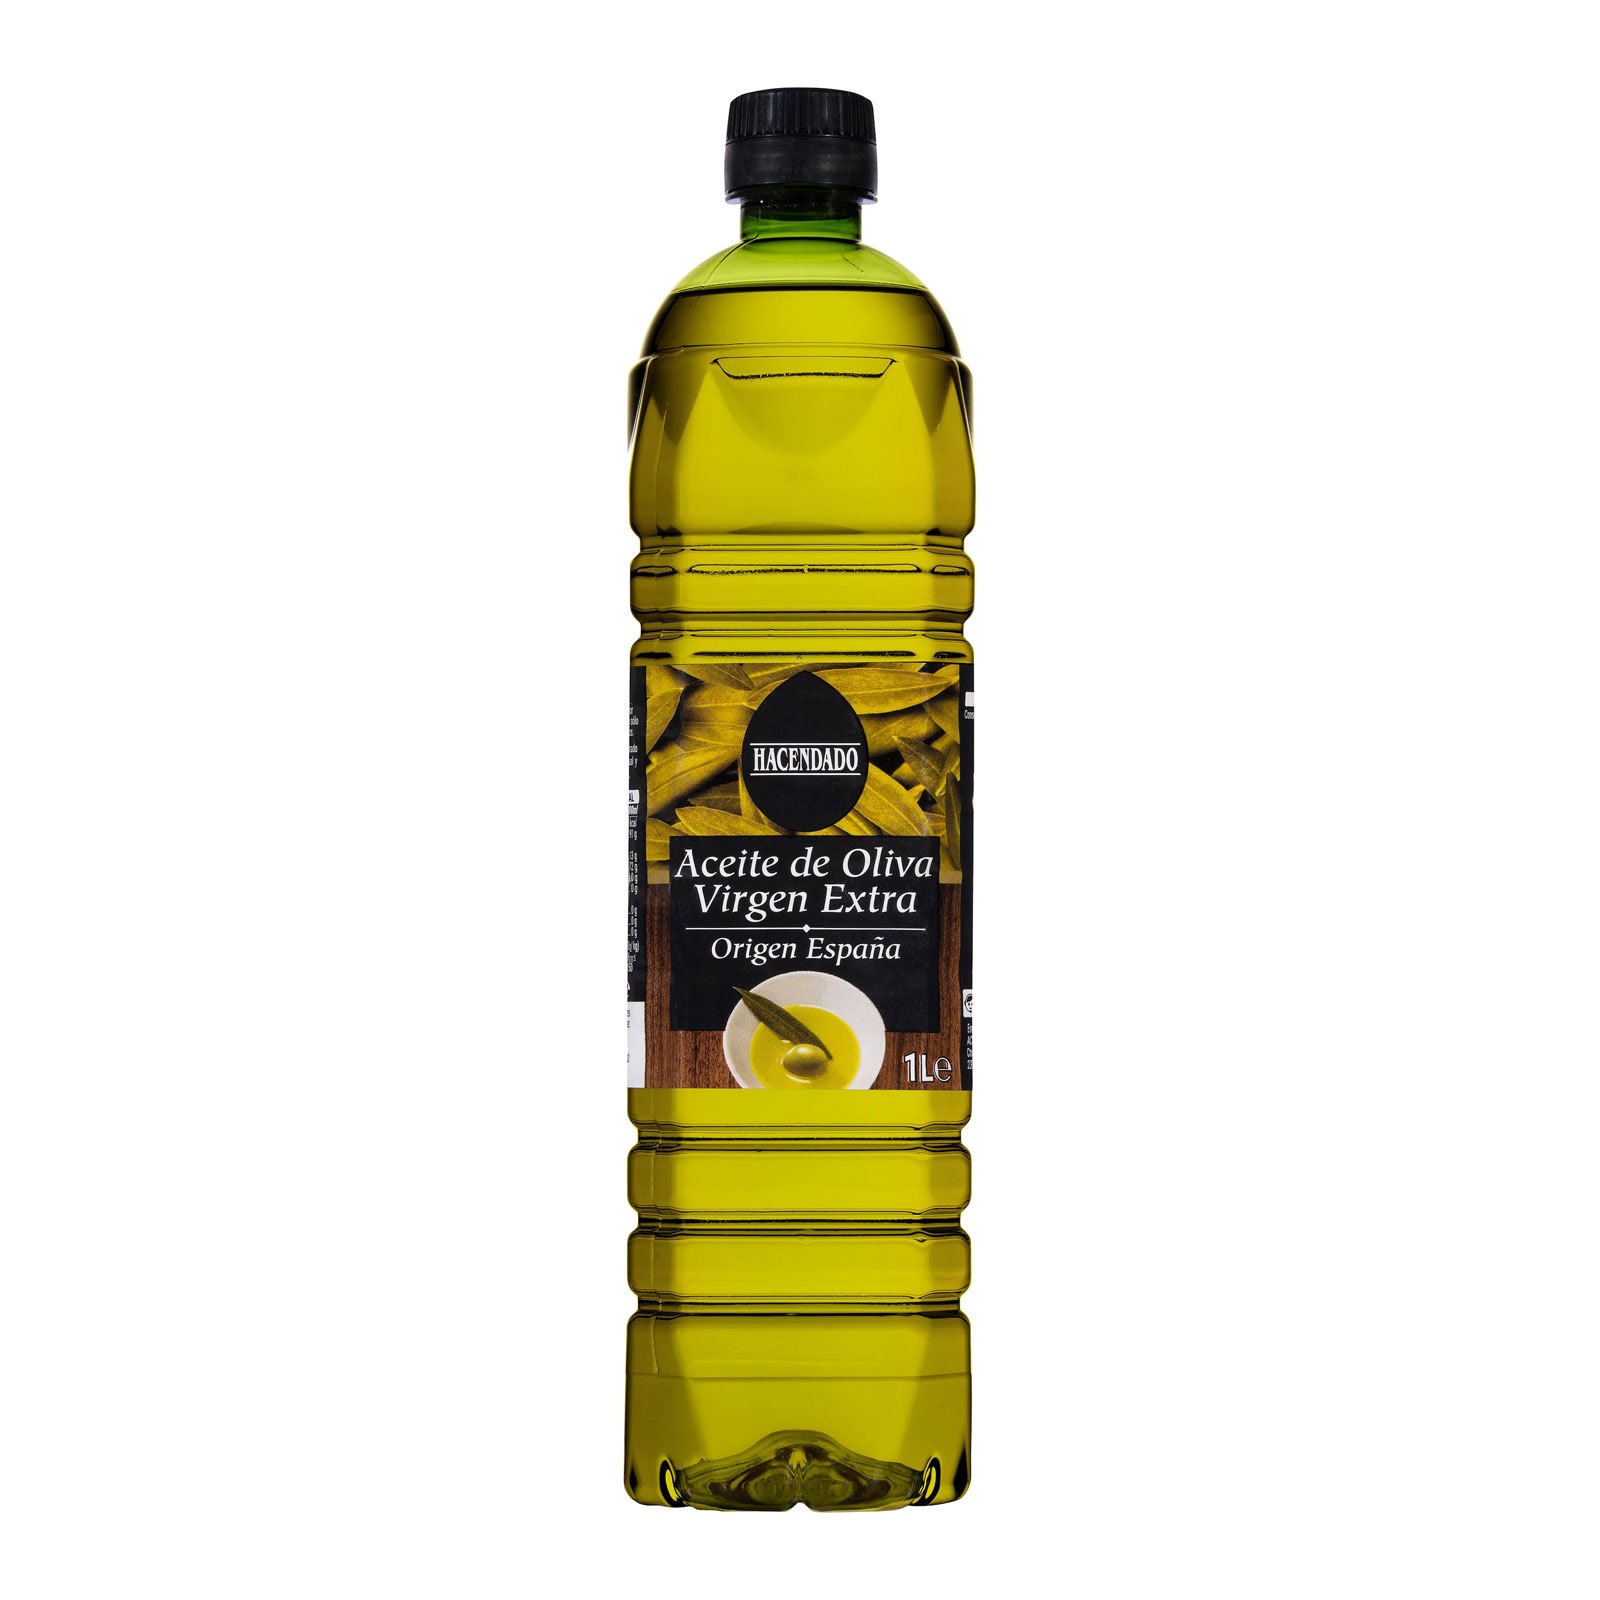 Aceite de oliva virgen extra de Mercadona: Calidad asegurada